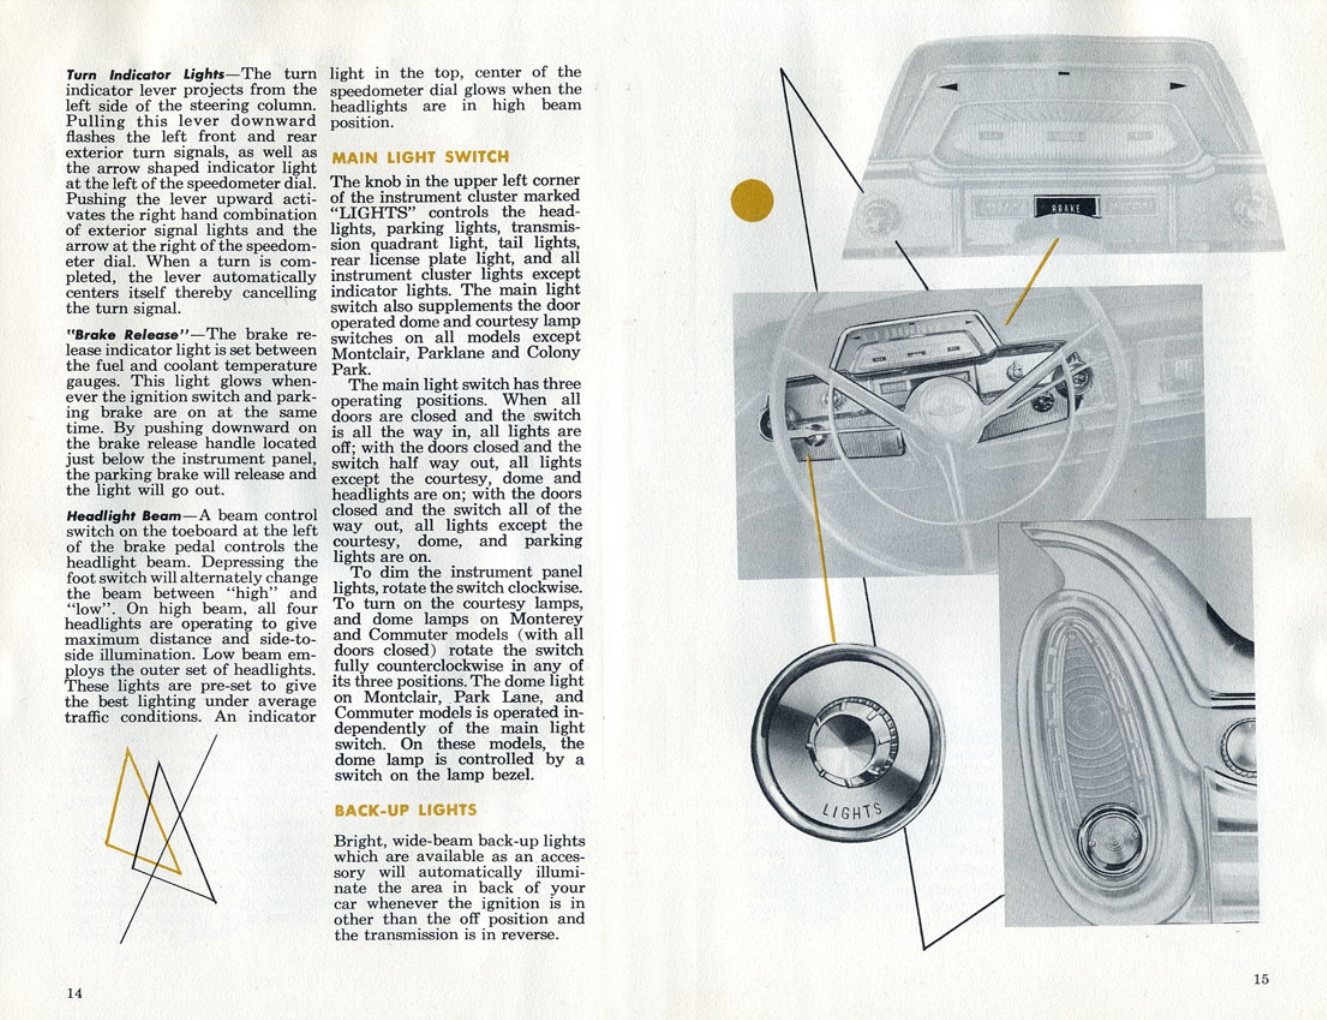 n_1960 Mercury Manual-14-15.jpg